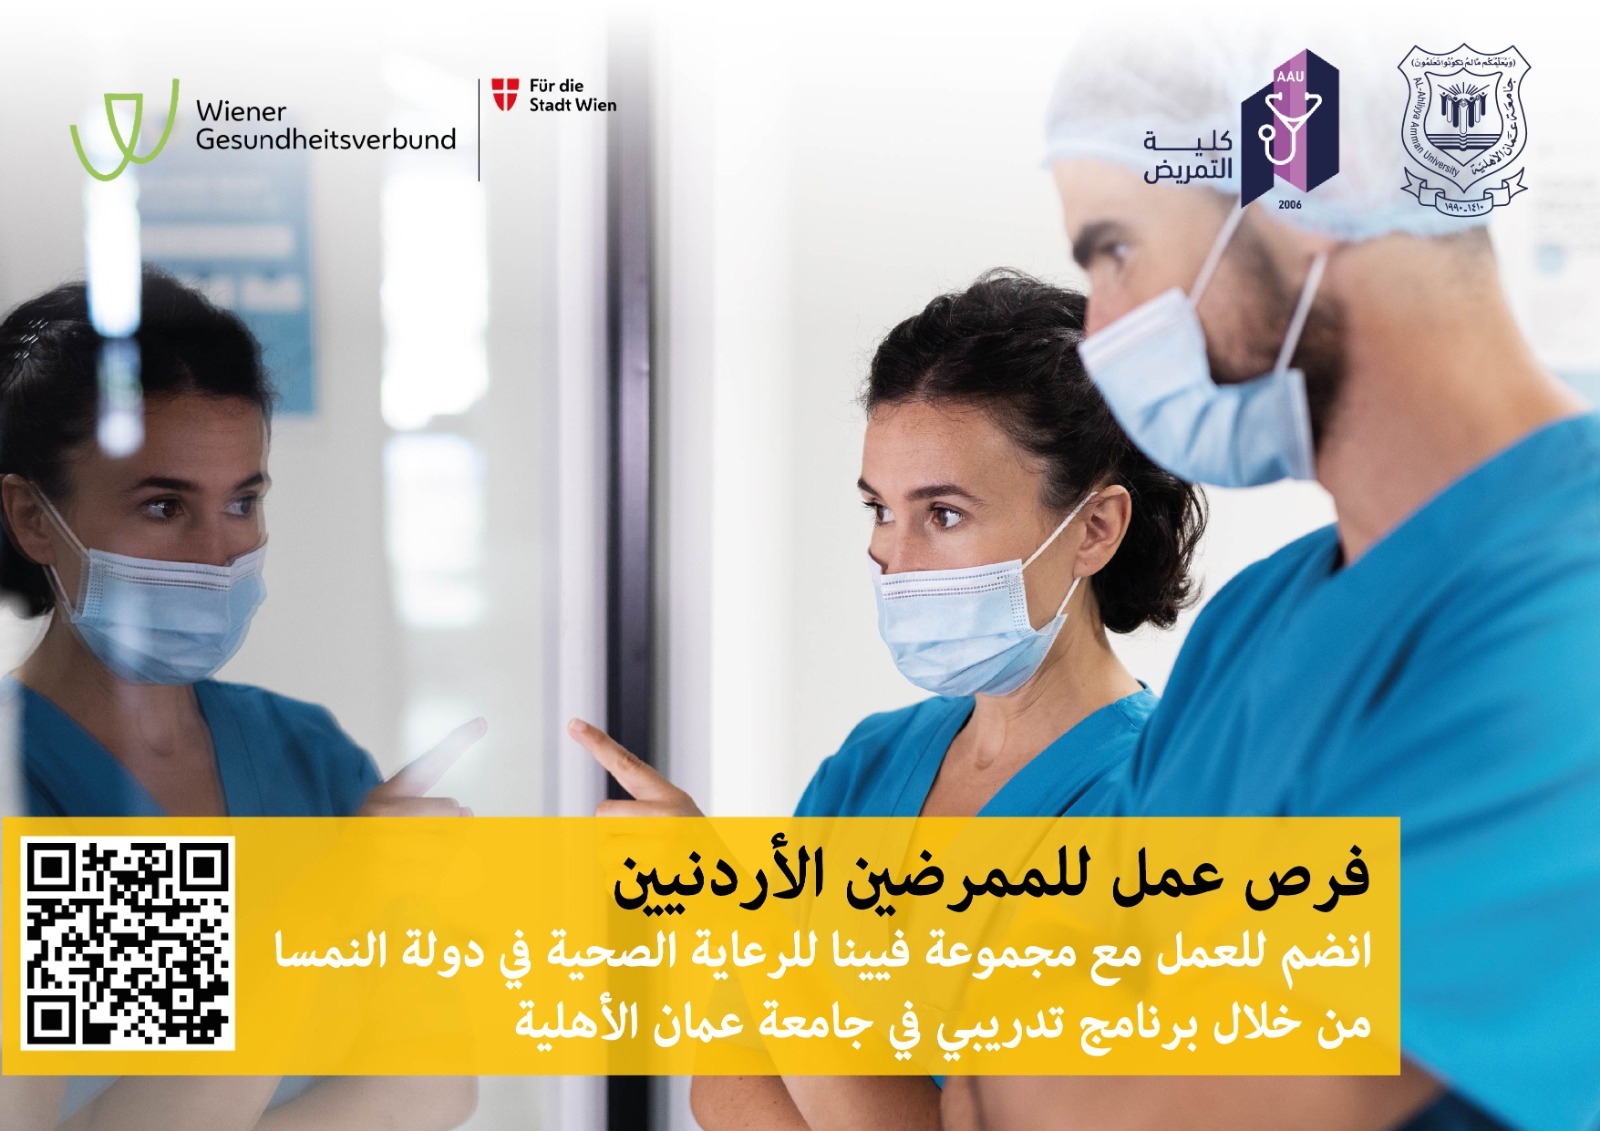 بالتعاون مع فيينا الطبية .. عمان الأهلية تطلق برنامج توظيف لخريجي التمريض الأردنيين بالنمسا | خارج المستطيل الأبيض